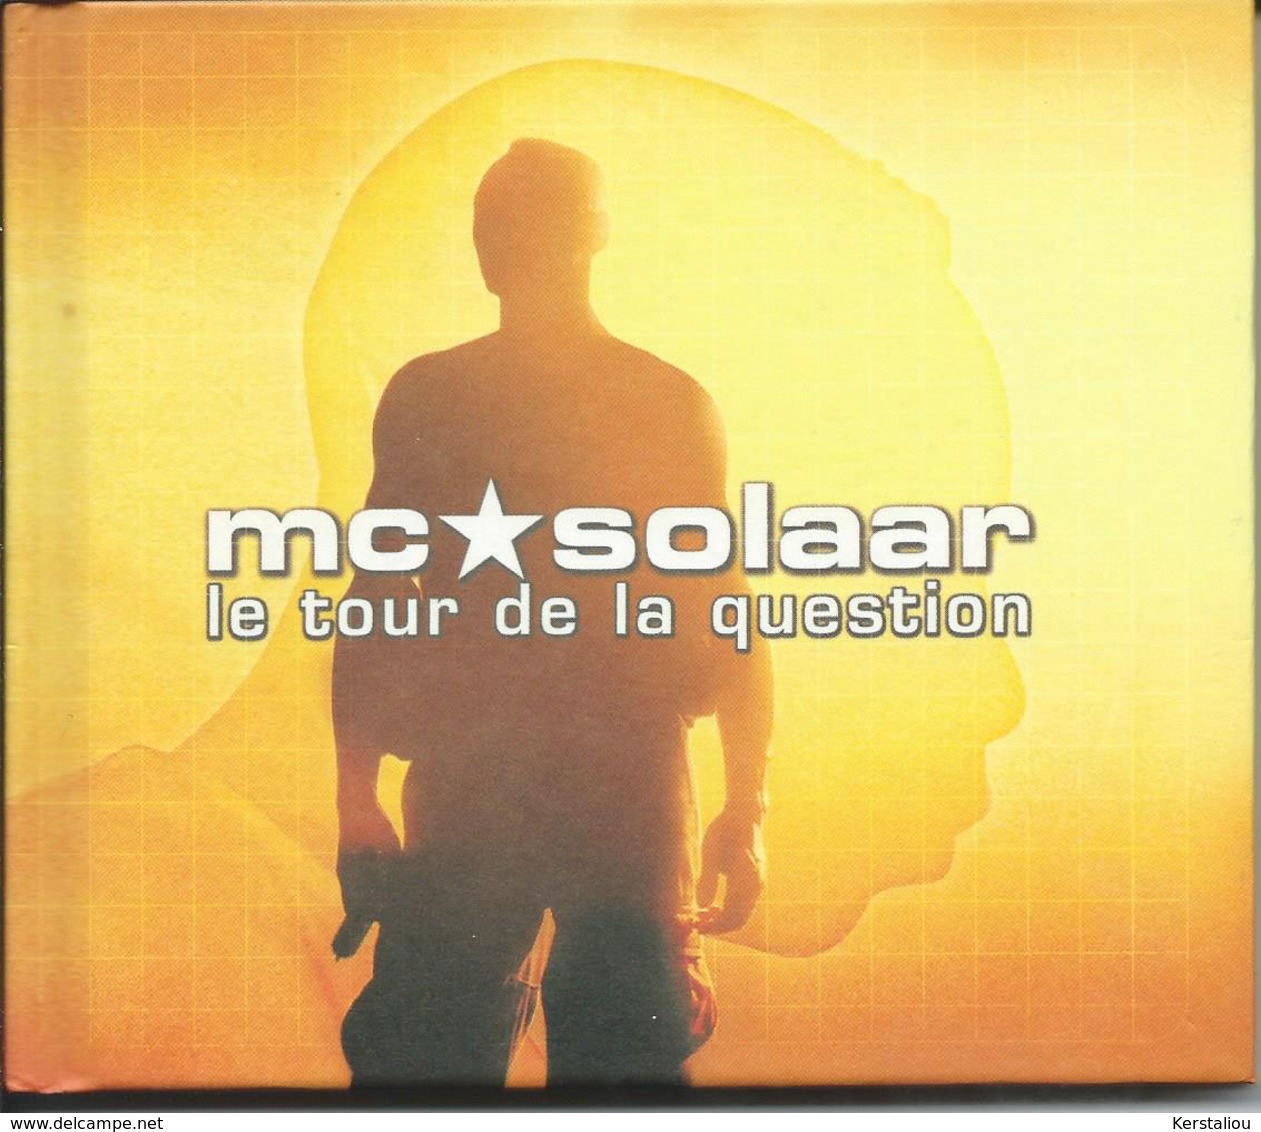 MC SOLAAR – "Prose Combat" & "Le Tour De La Question" – Lot De 3CD – 1994/1998 – Made In France & Germany - Rap & Hip Hop